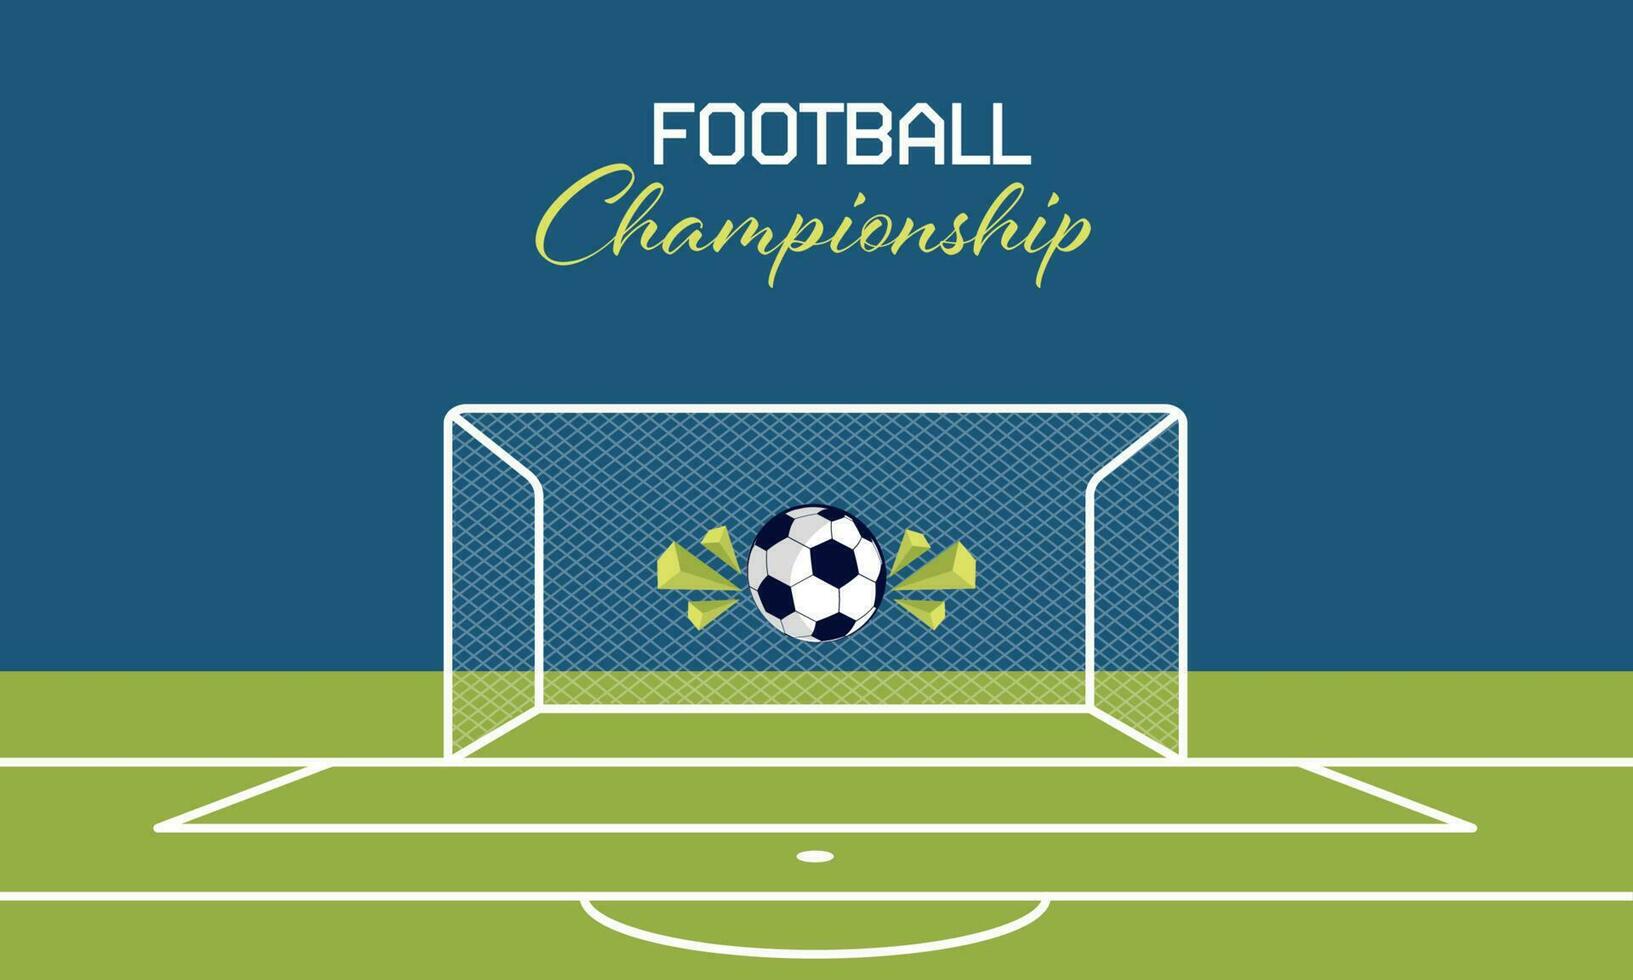 fotboll mästerskap begrepp med fotboll boll träffar mål netto, 3d triangel element på blå och grön kasta bakgrund. vektor